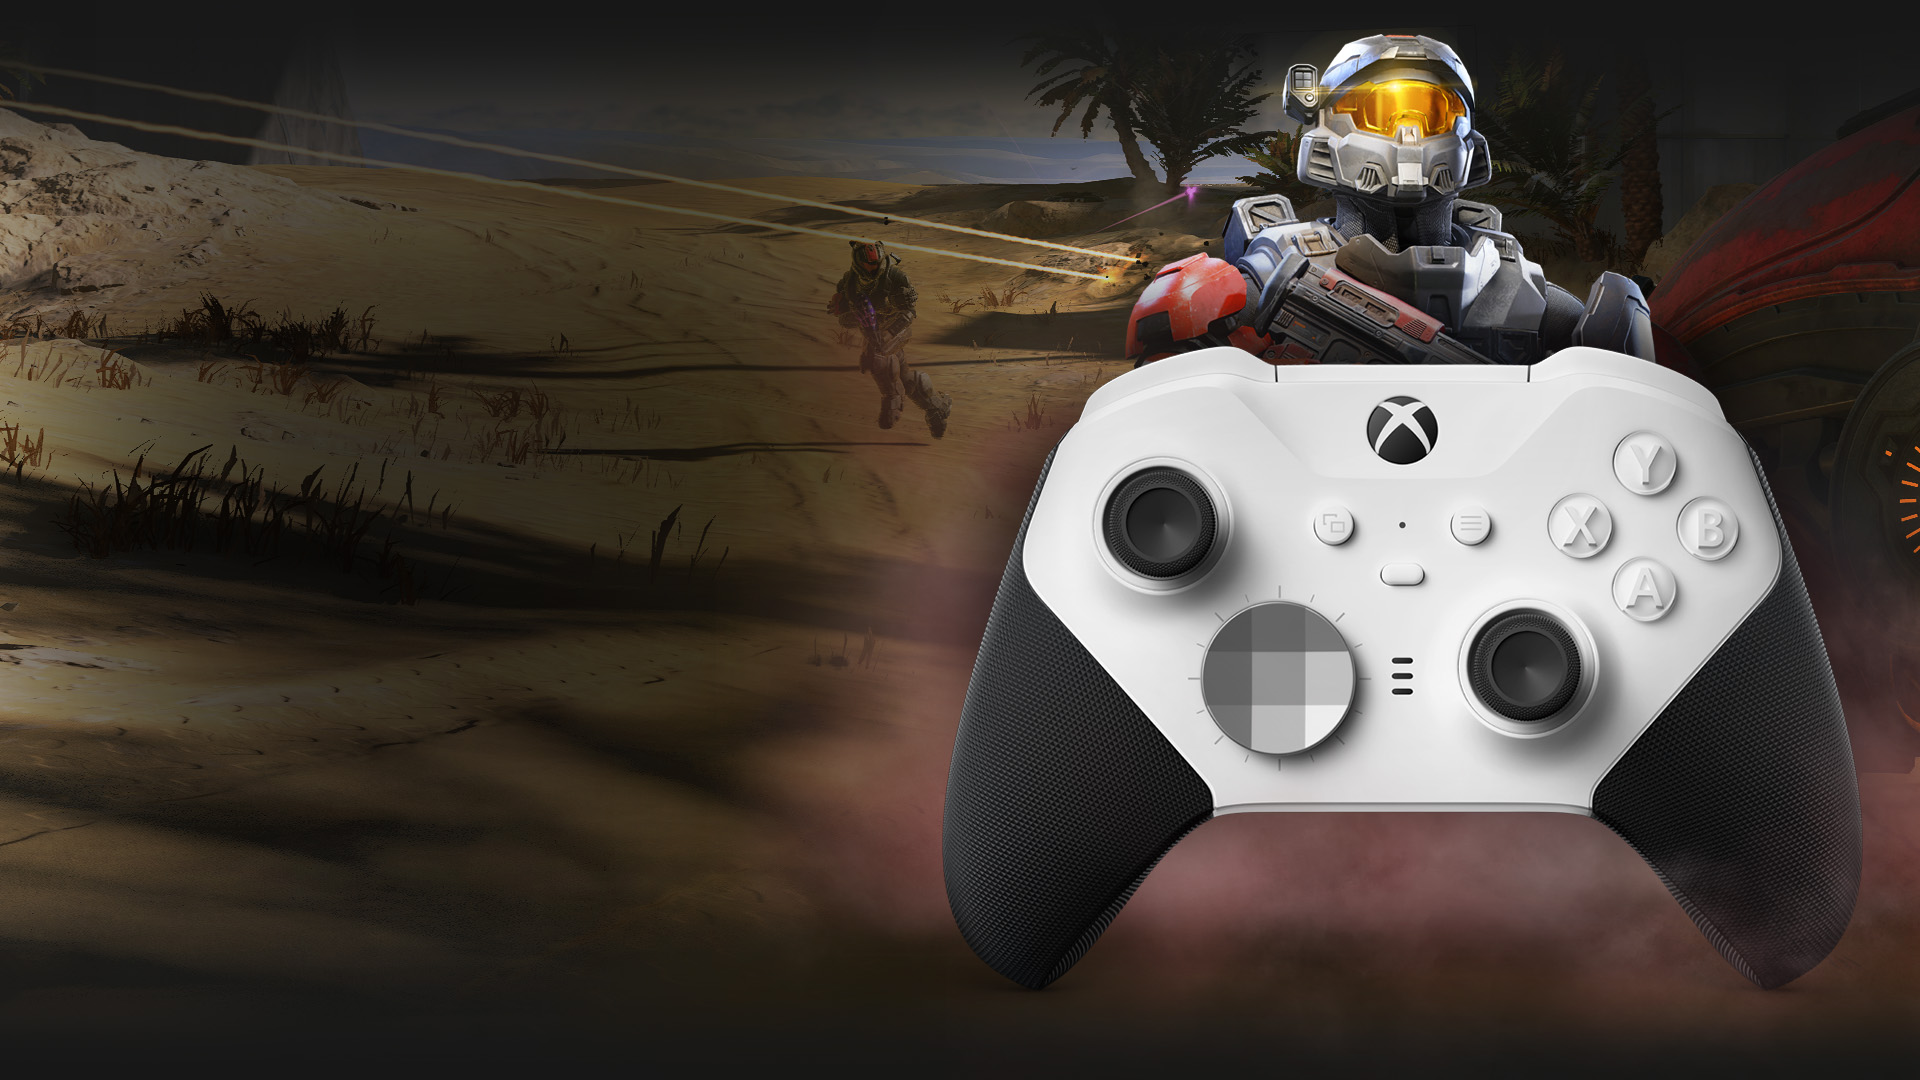 Gamepad Xbox Wireless Controller Elite Series 2 Core Edition má integrovaný 3,5 mm Audio Jack pre slúchadlá s mikrofónom, ktoré vám maximálne uľahčia online komunikáciu pri hraní rozličných multiplayerových titulov.